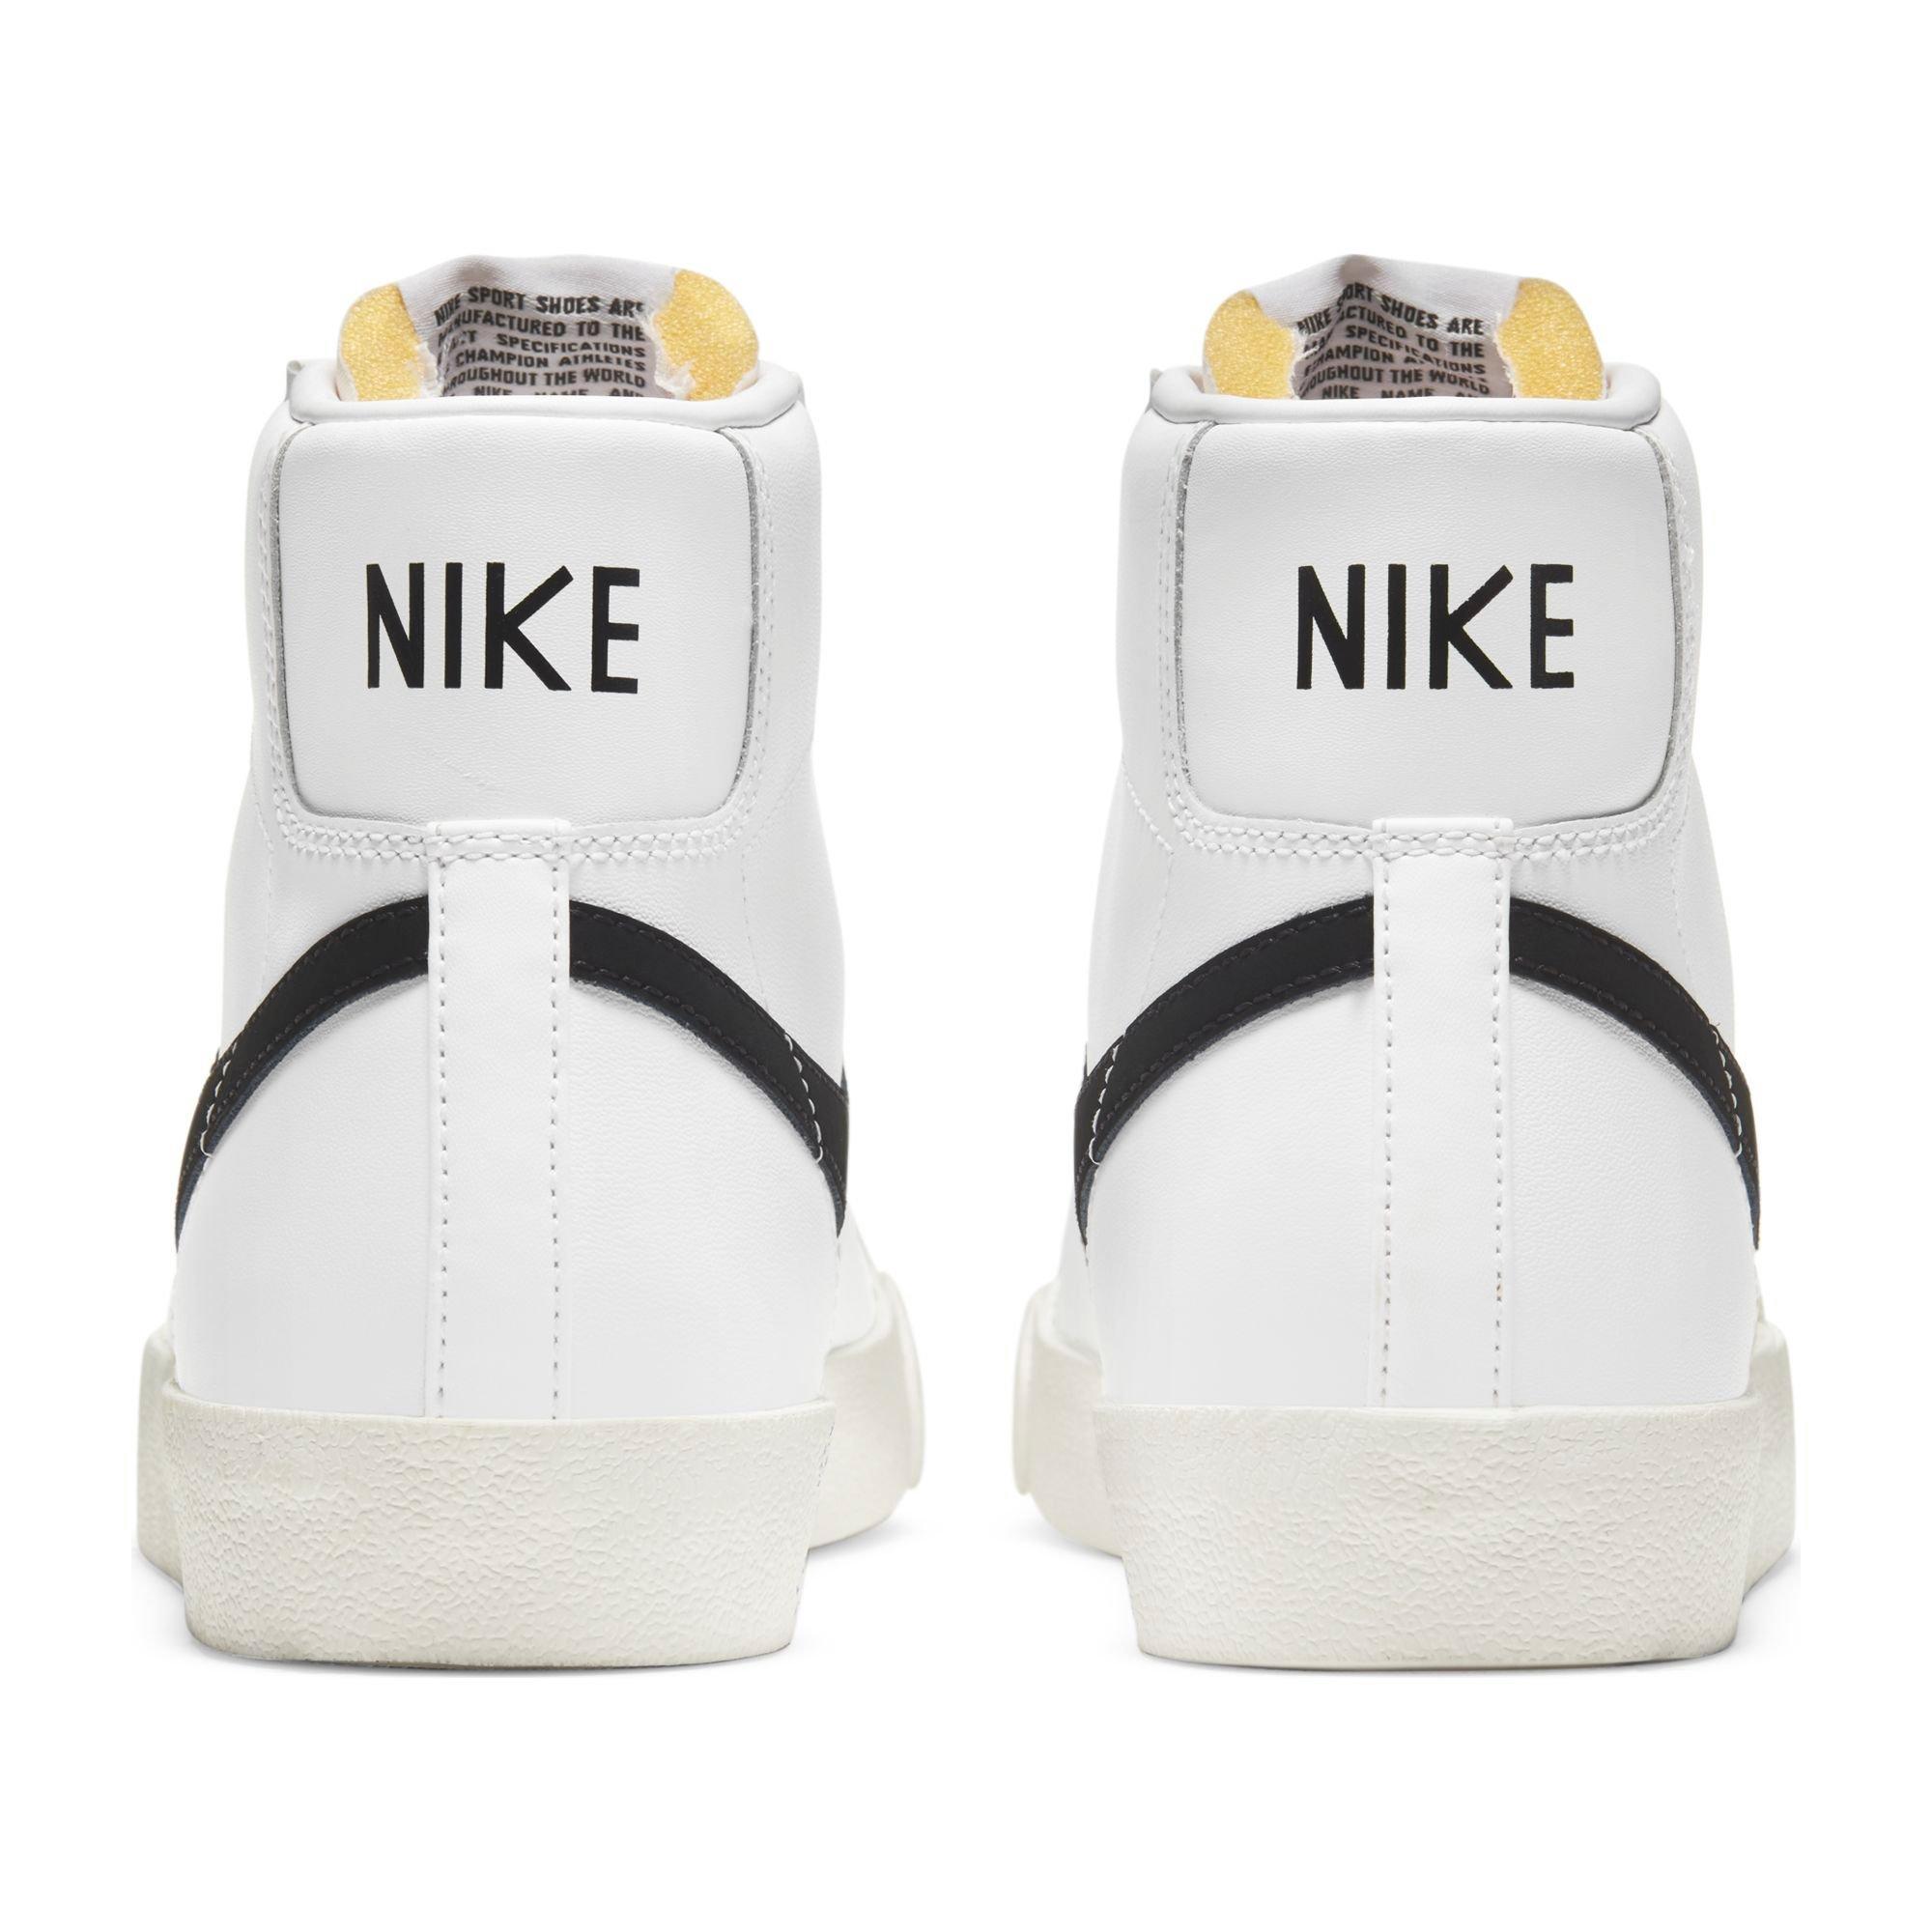 Nike Mid "White/Black" Men's Shoe